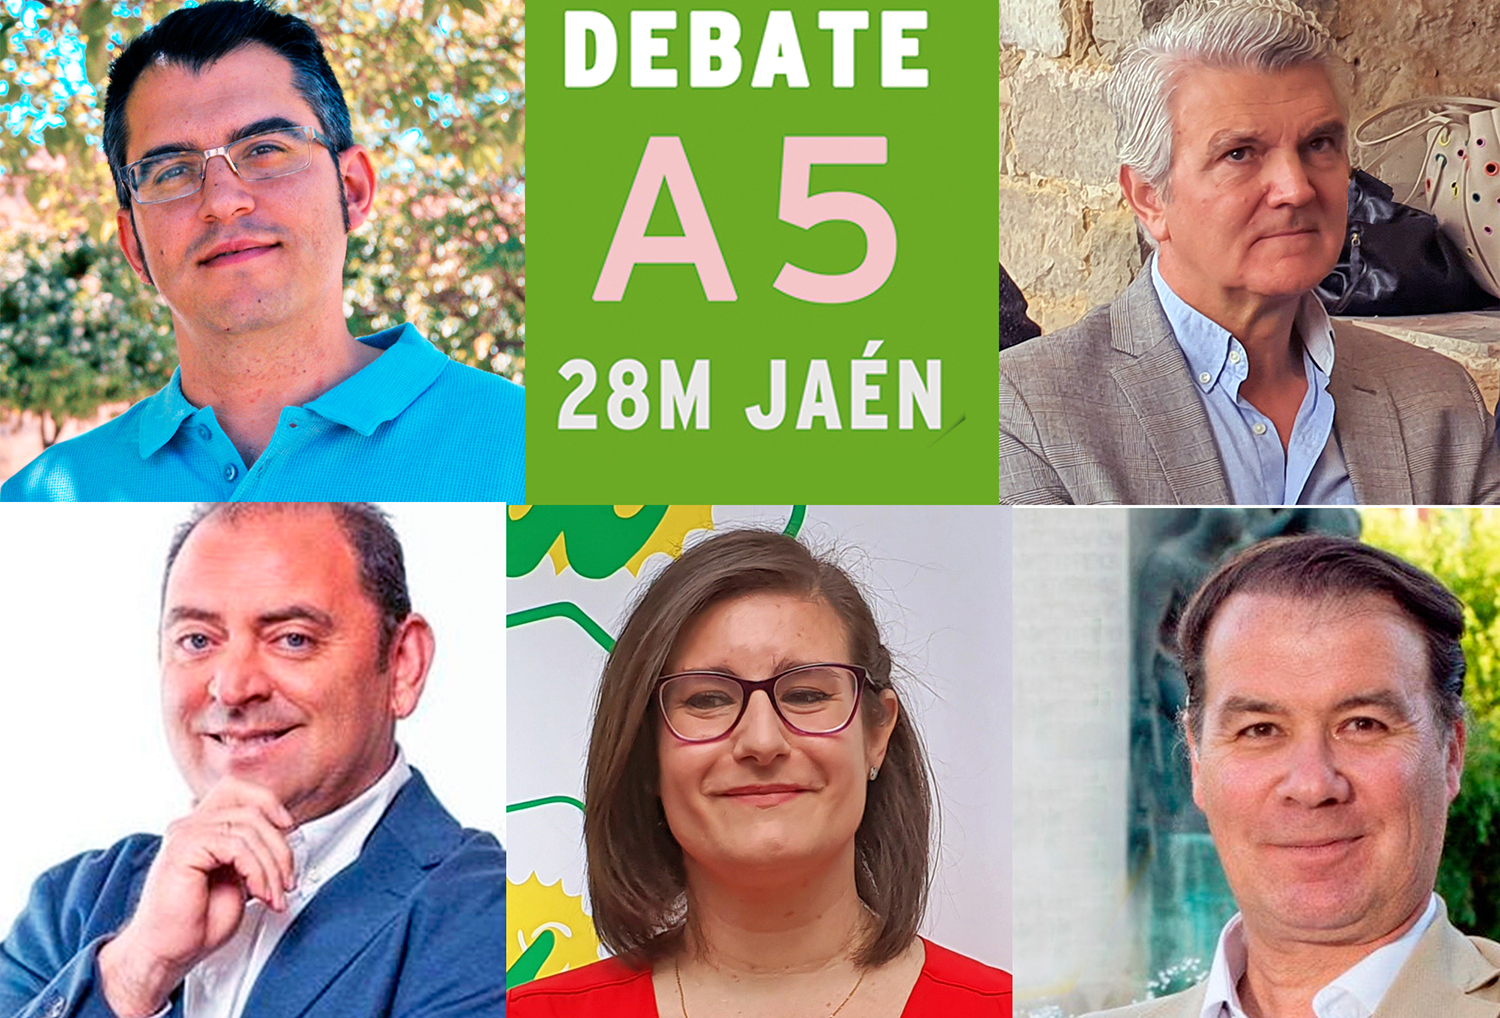 Segundo debate del 28M en Jaén capital con los candidatos a la alcaldía de Ciudadanos, Vox, Podemos, IU y Jaén Merece Más